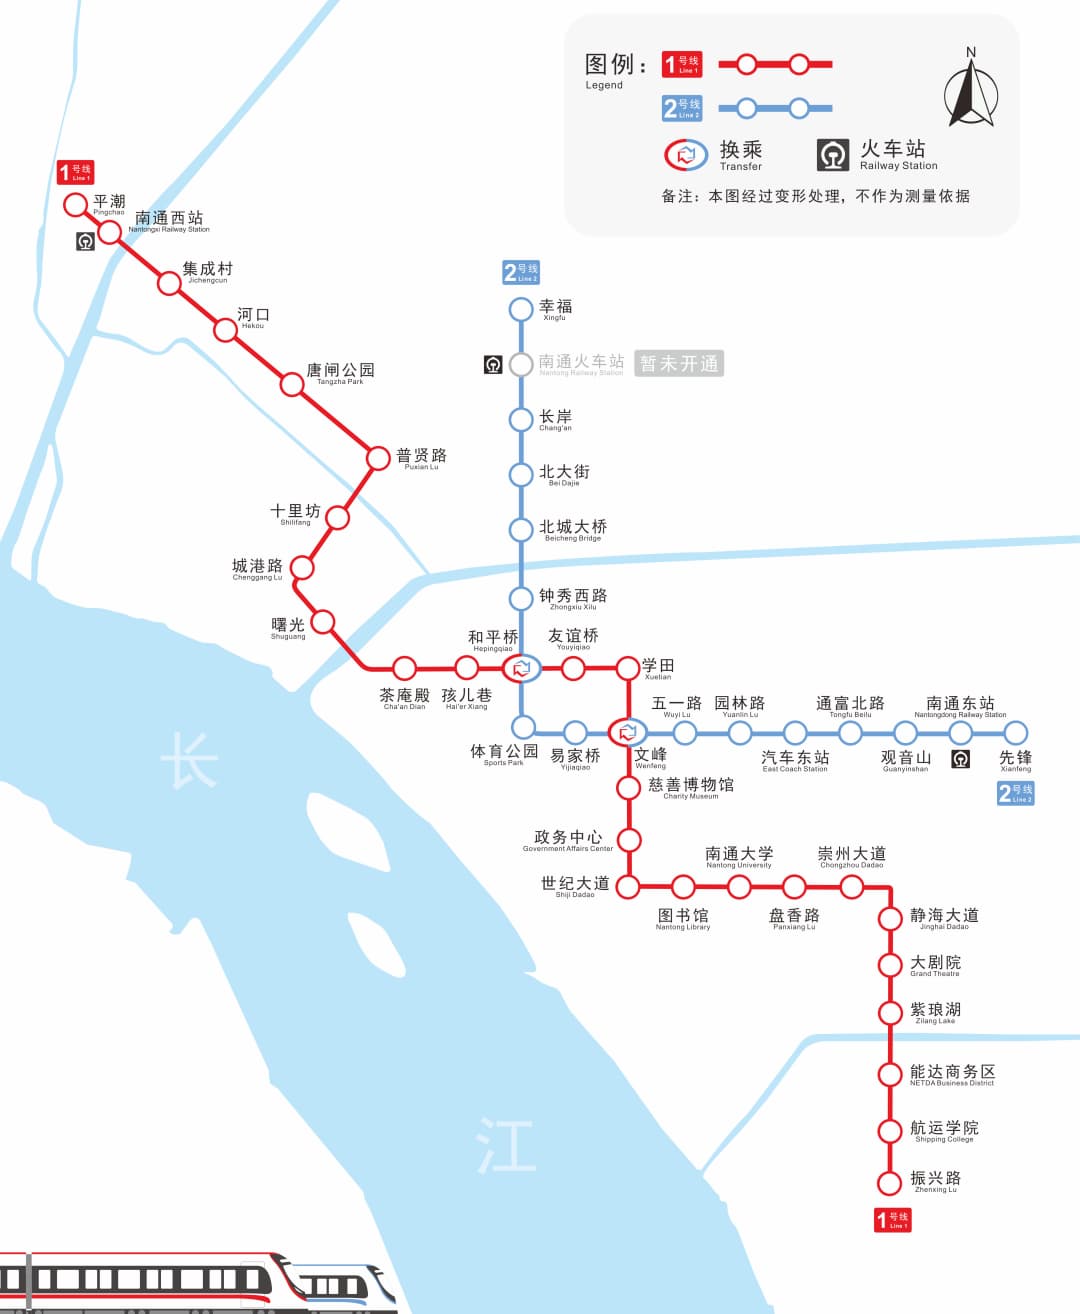 南通地铁线路图